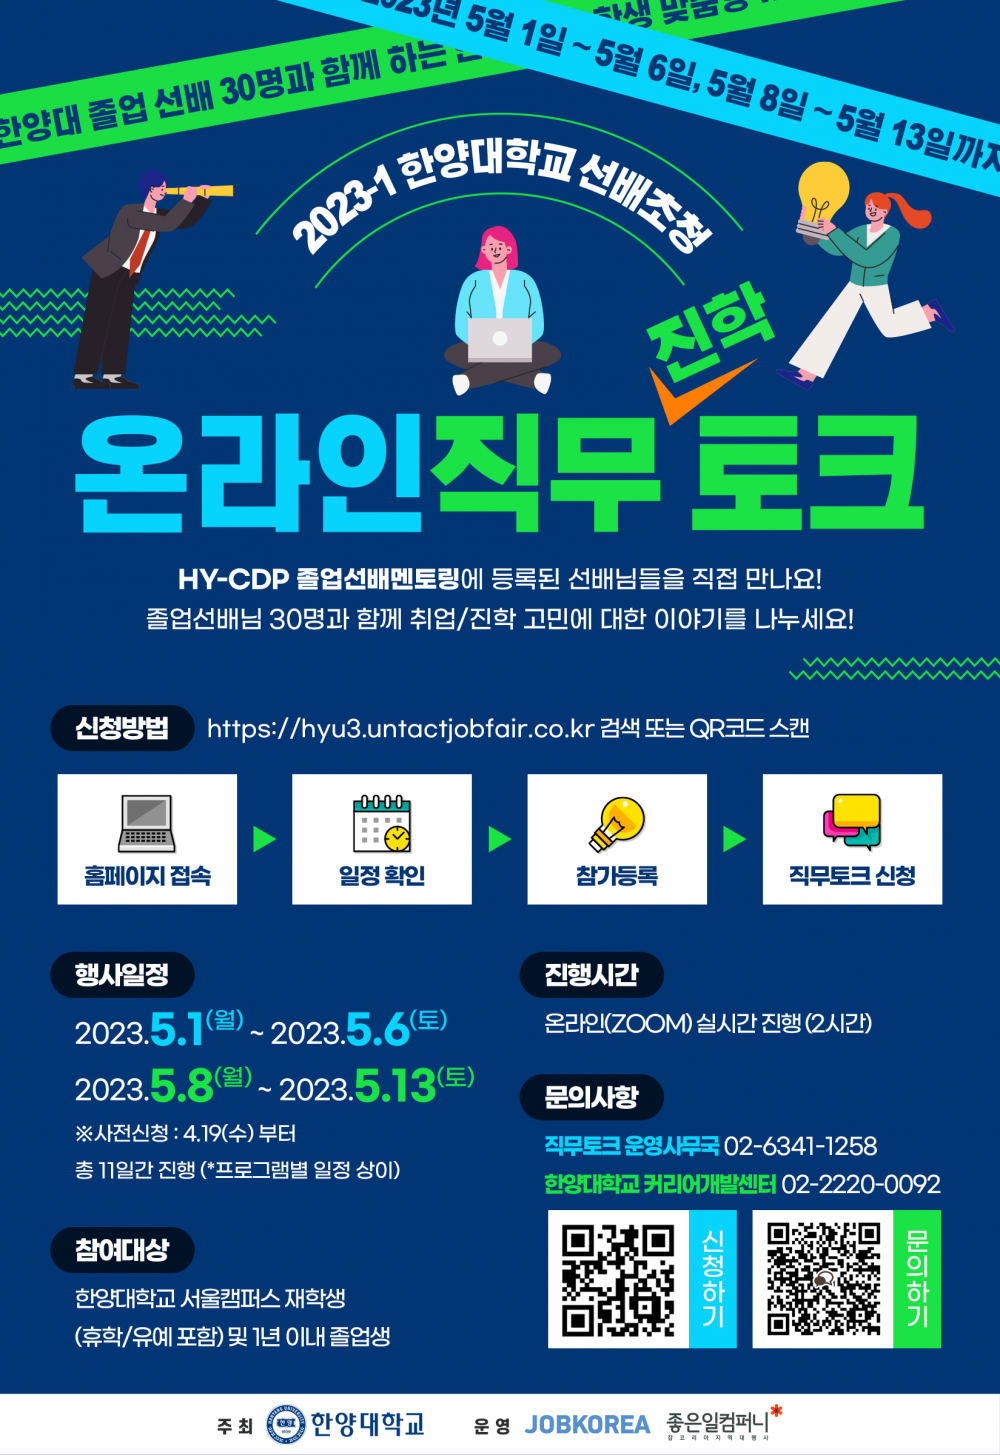 2023-1 한양대학교 선배초청 온라인 직무토크 포스터 (1)